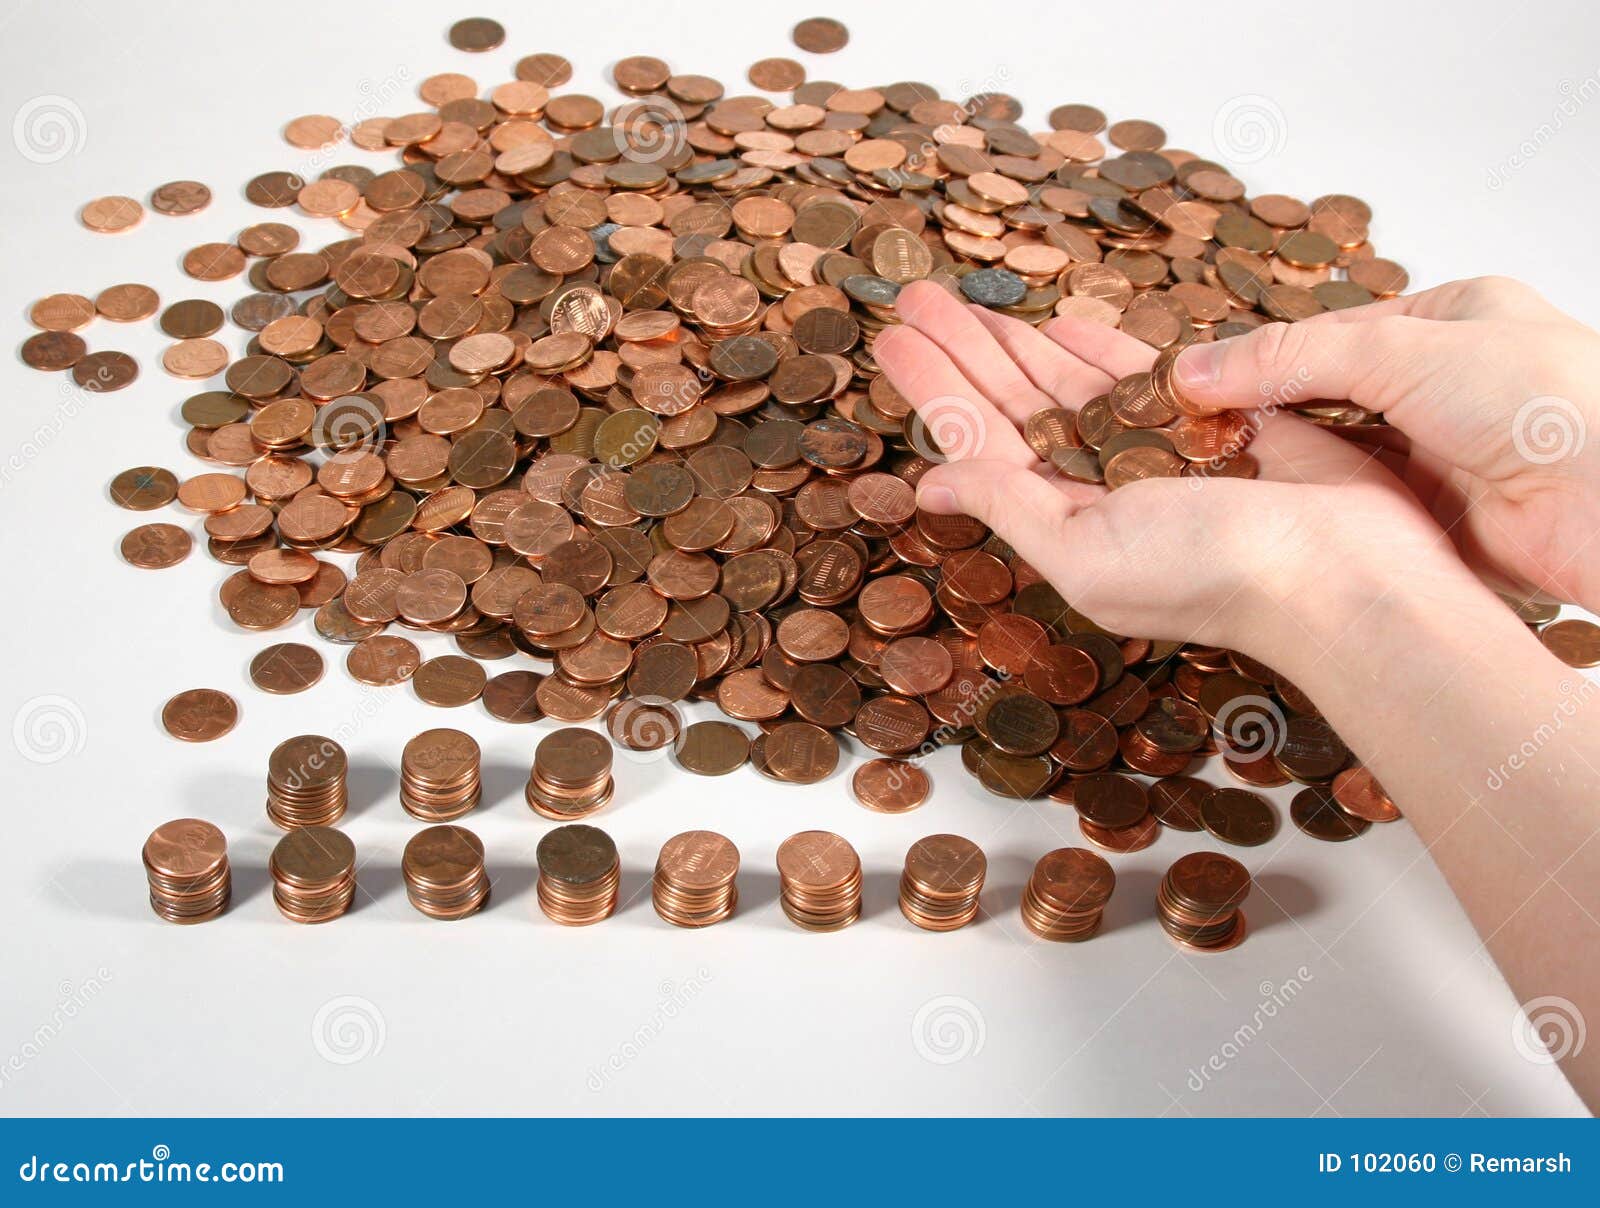 counting-pennies-102060.jpg